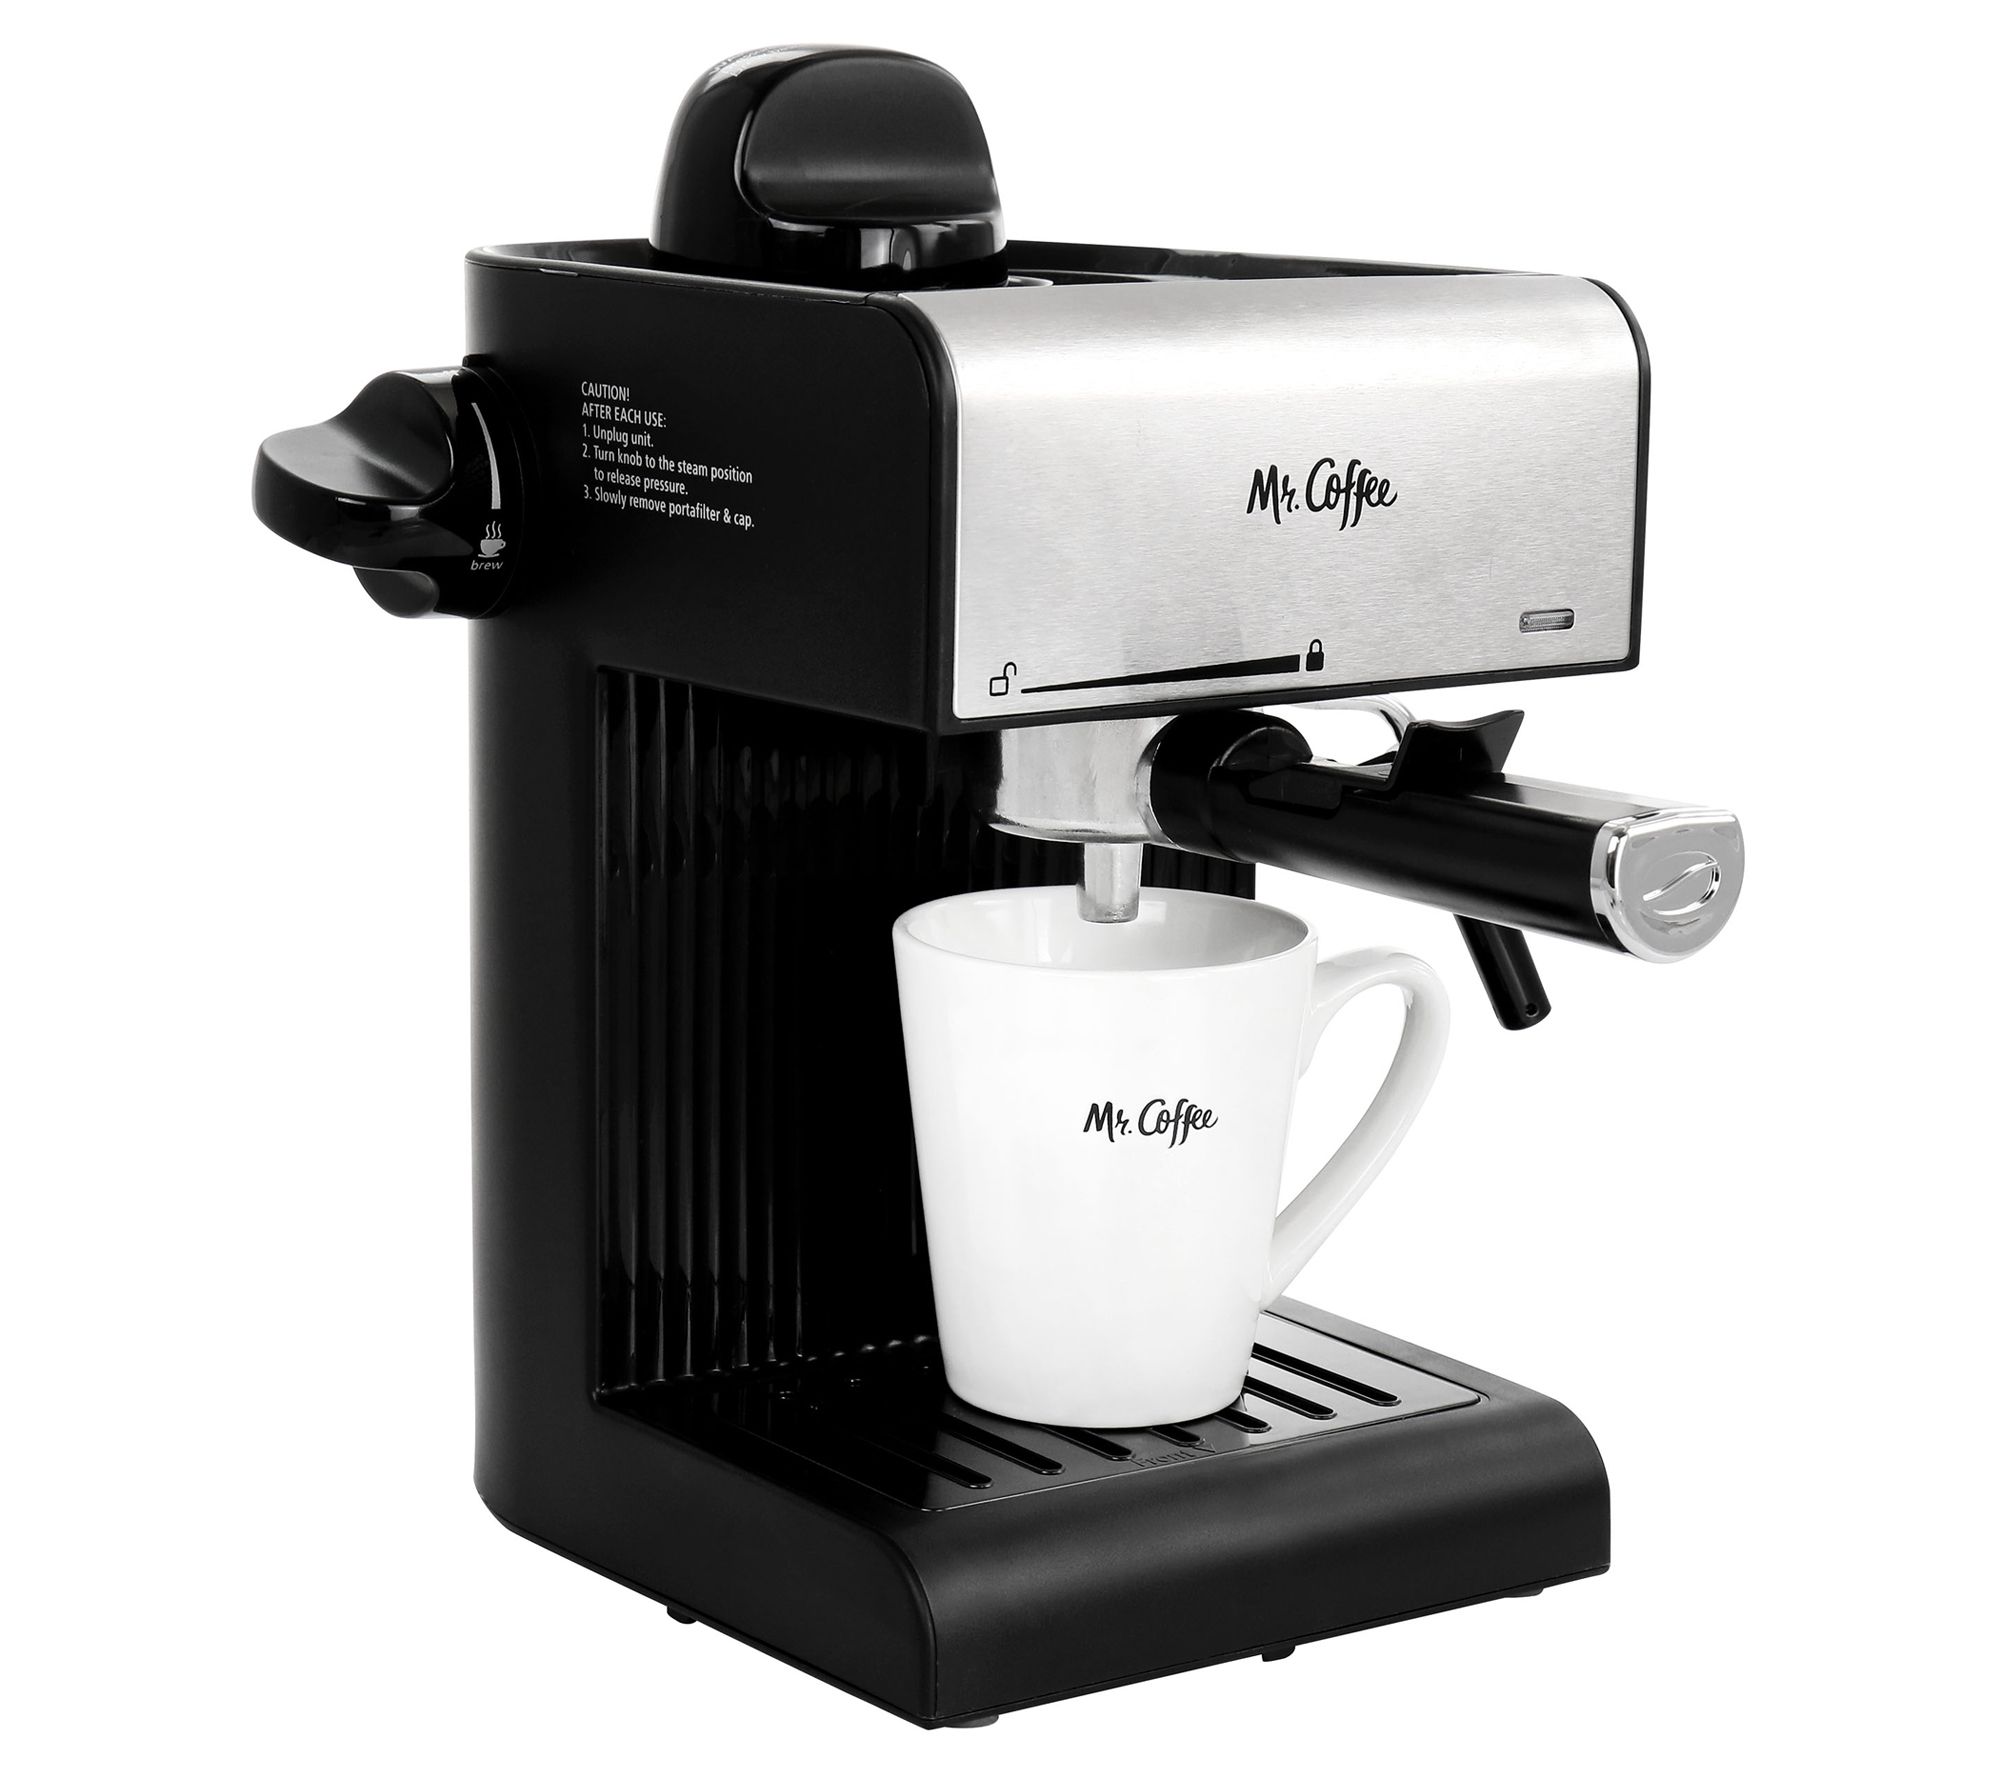 Espresso Machine, 3.5 Bar 4 Cup Steam Espresso Machine Cappuccino Maker  with Milk Frother, Black